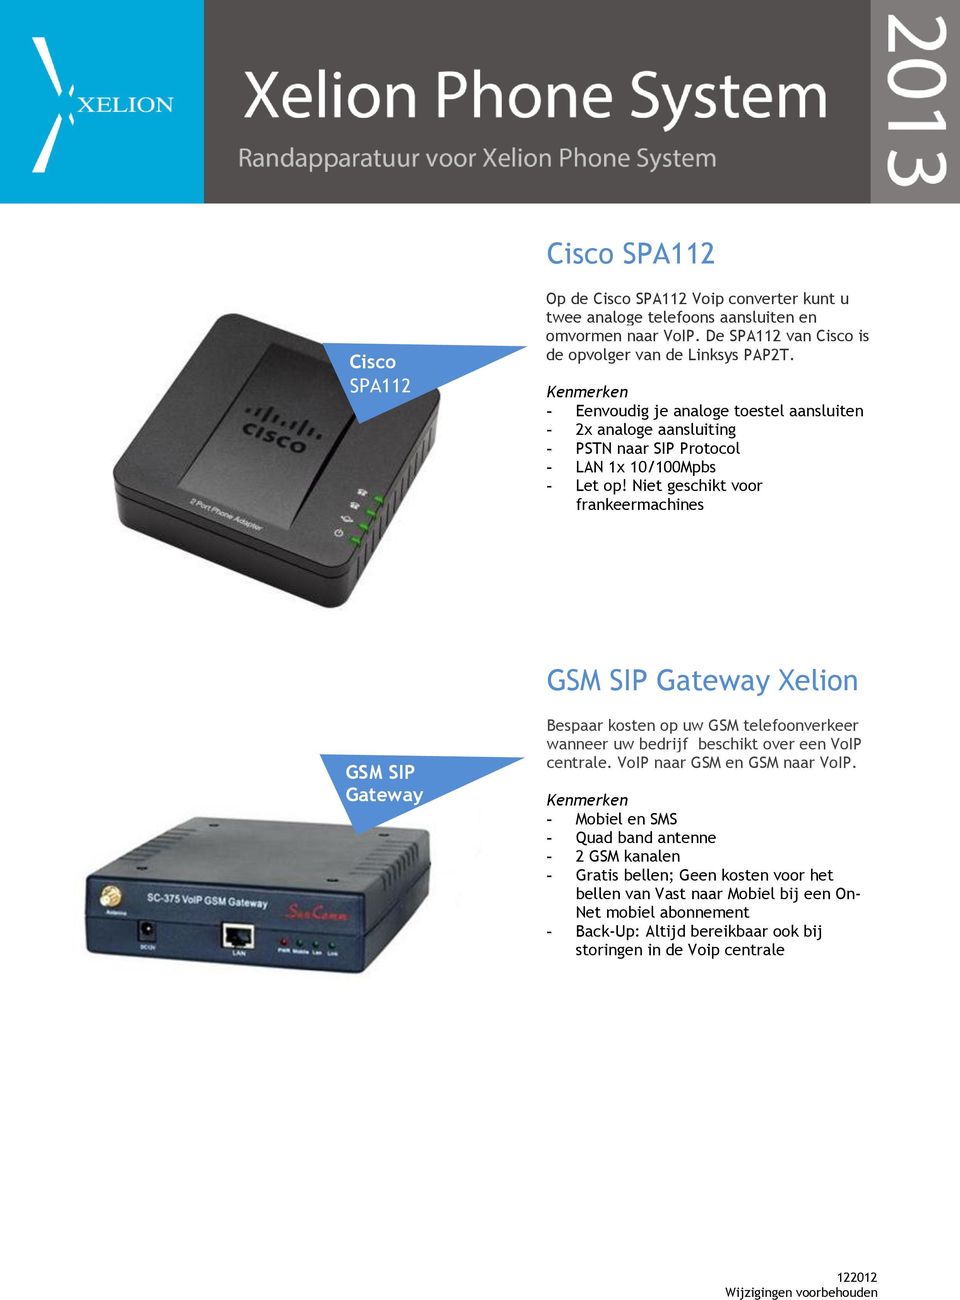 Niet geschikt voor frankeermachines GSM SIP Gateway Xelion GSM SIP Gateway Bespaar kosten op uw GSM telefoonverkeer wanneer uw bedrijf beschikt over een VoIP centrale.